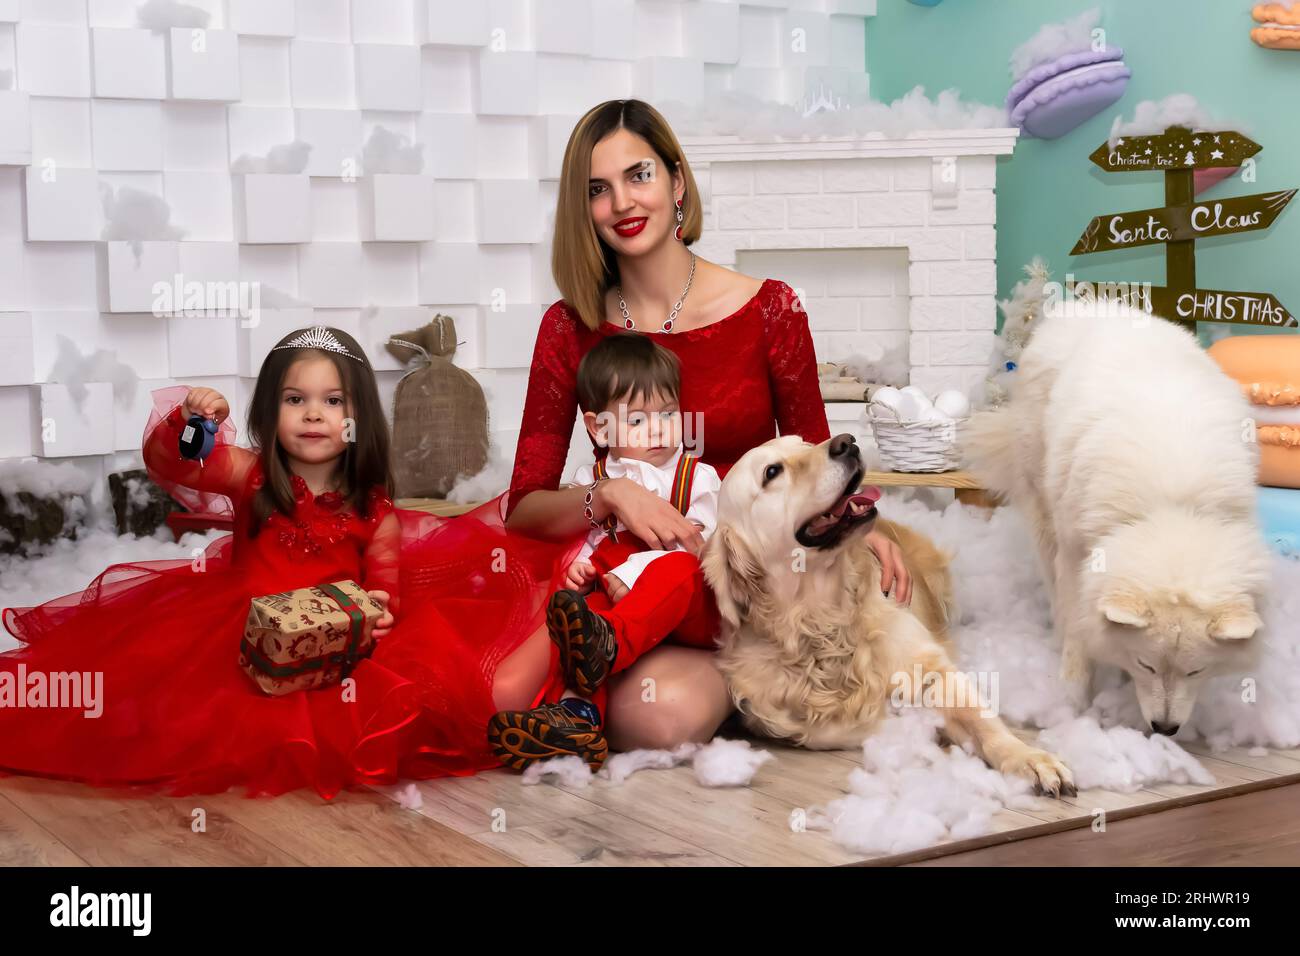 Familienfoto-Porträt. Mama und ihre zwei Kinder und zwei weiße Hunde in roten Kleidern feiern die Chistmas, Neujahr. Glückliche junge Mutter und ihre Tochter Stockfoto